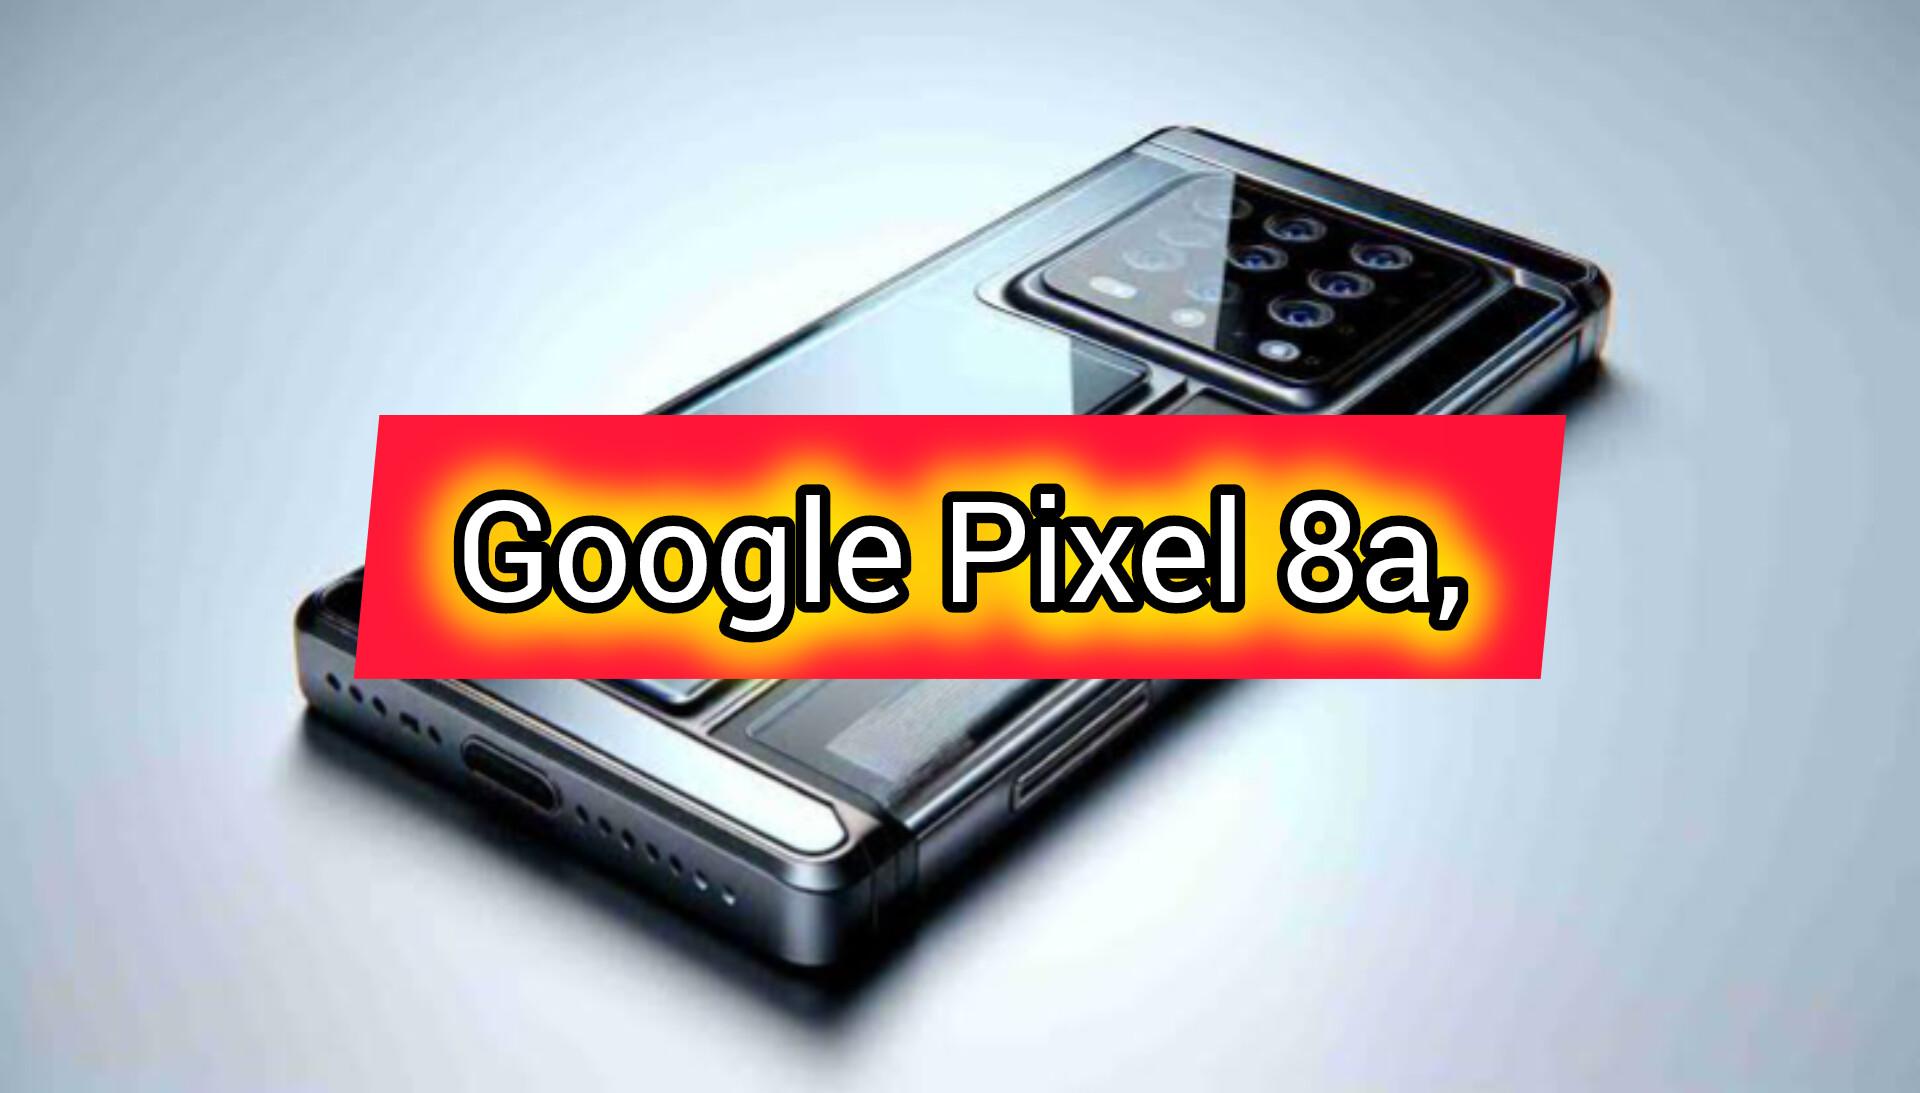 Harga Handphone Canggih Google Pixel 8a, Pixel 8a Lebih Murah dari iPhone 